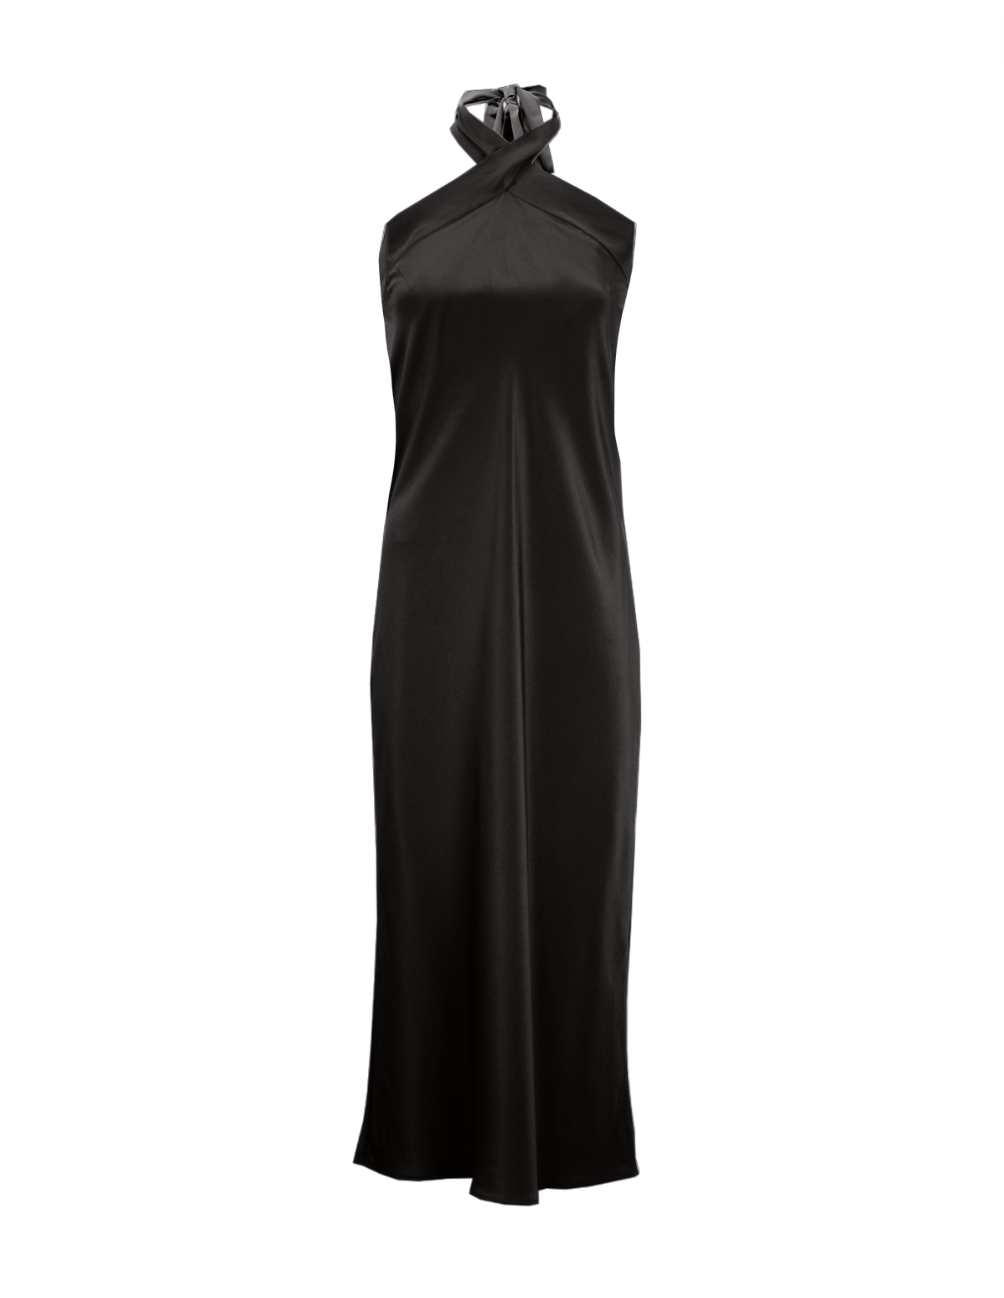 Halter Slip Dress (Black)